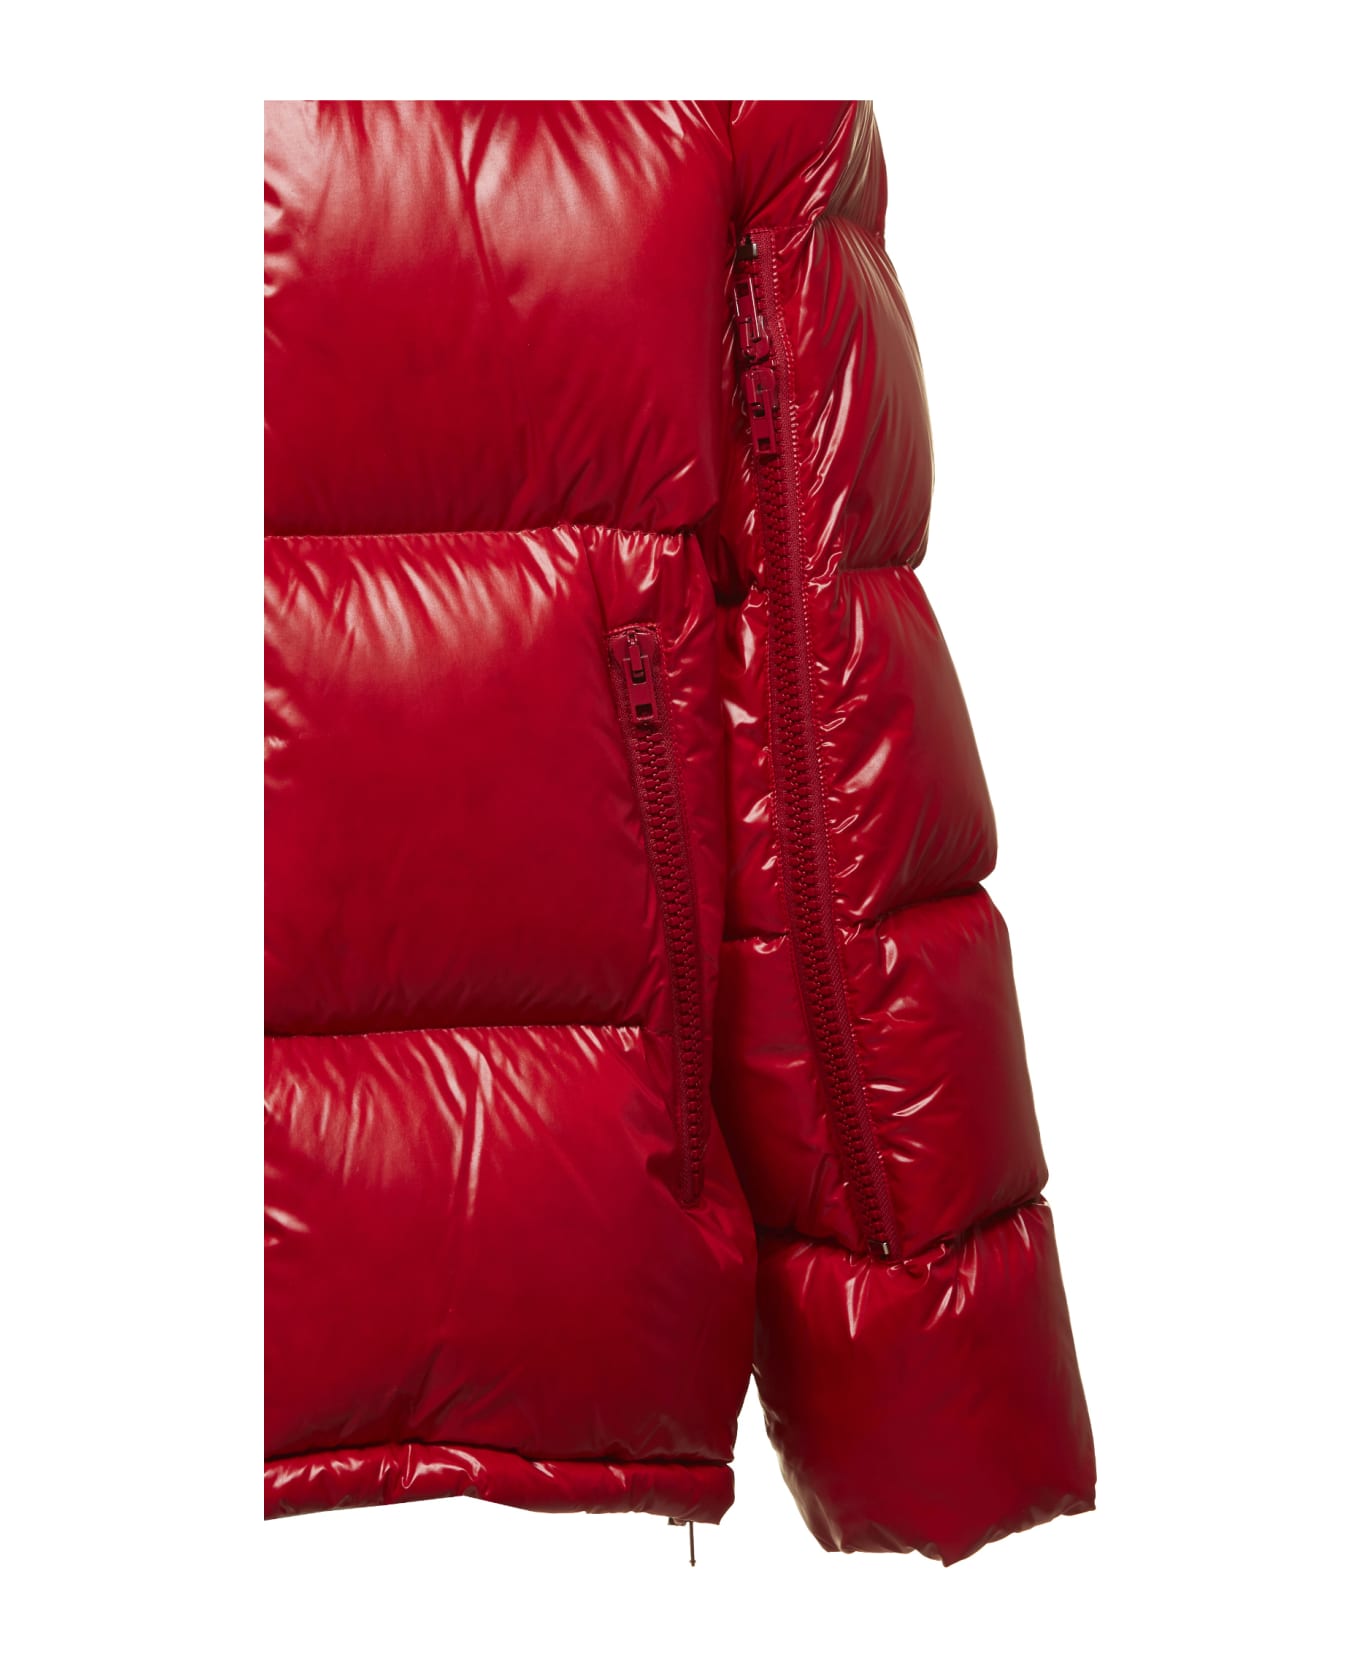 Calvin Klein Oversized Padded Jacket | italist